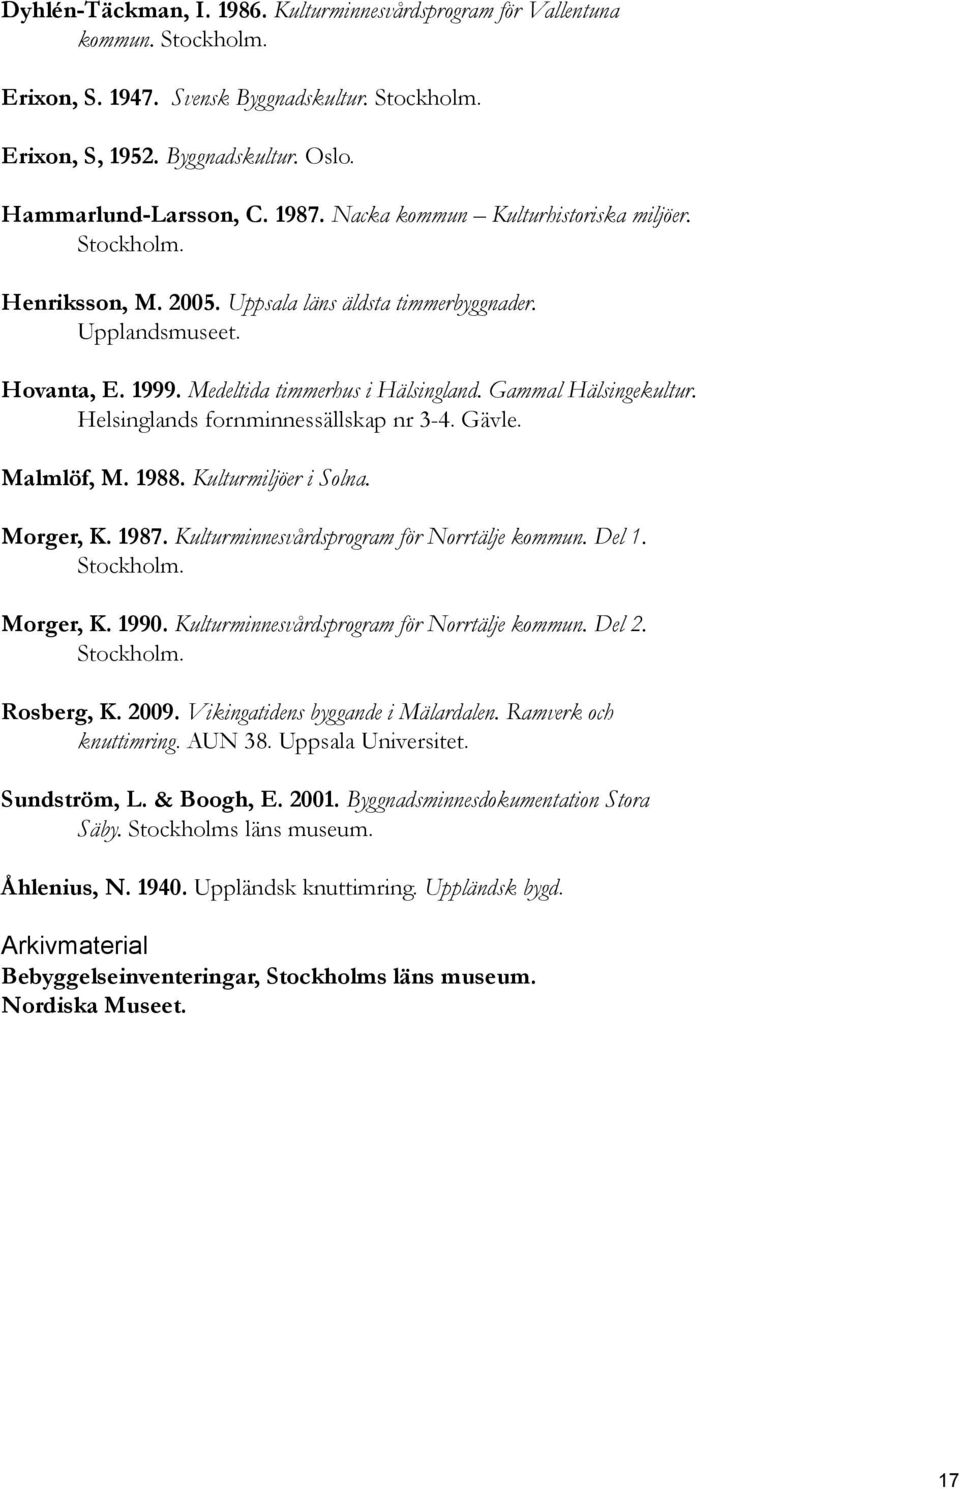 Gammal Hälsingekultur. Helsinglands fornminnessällskap nr 3-4. Gävle. Malmlöf, M. 1988. Kulturmiljöer i Solna. Morger, K. 1987. Kulturminnesvårdsprogram för Norrtälje kommun. Del 1. Stockholm.